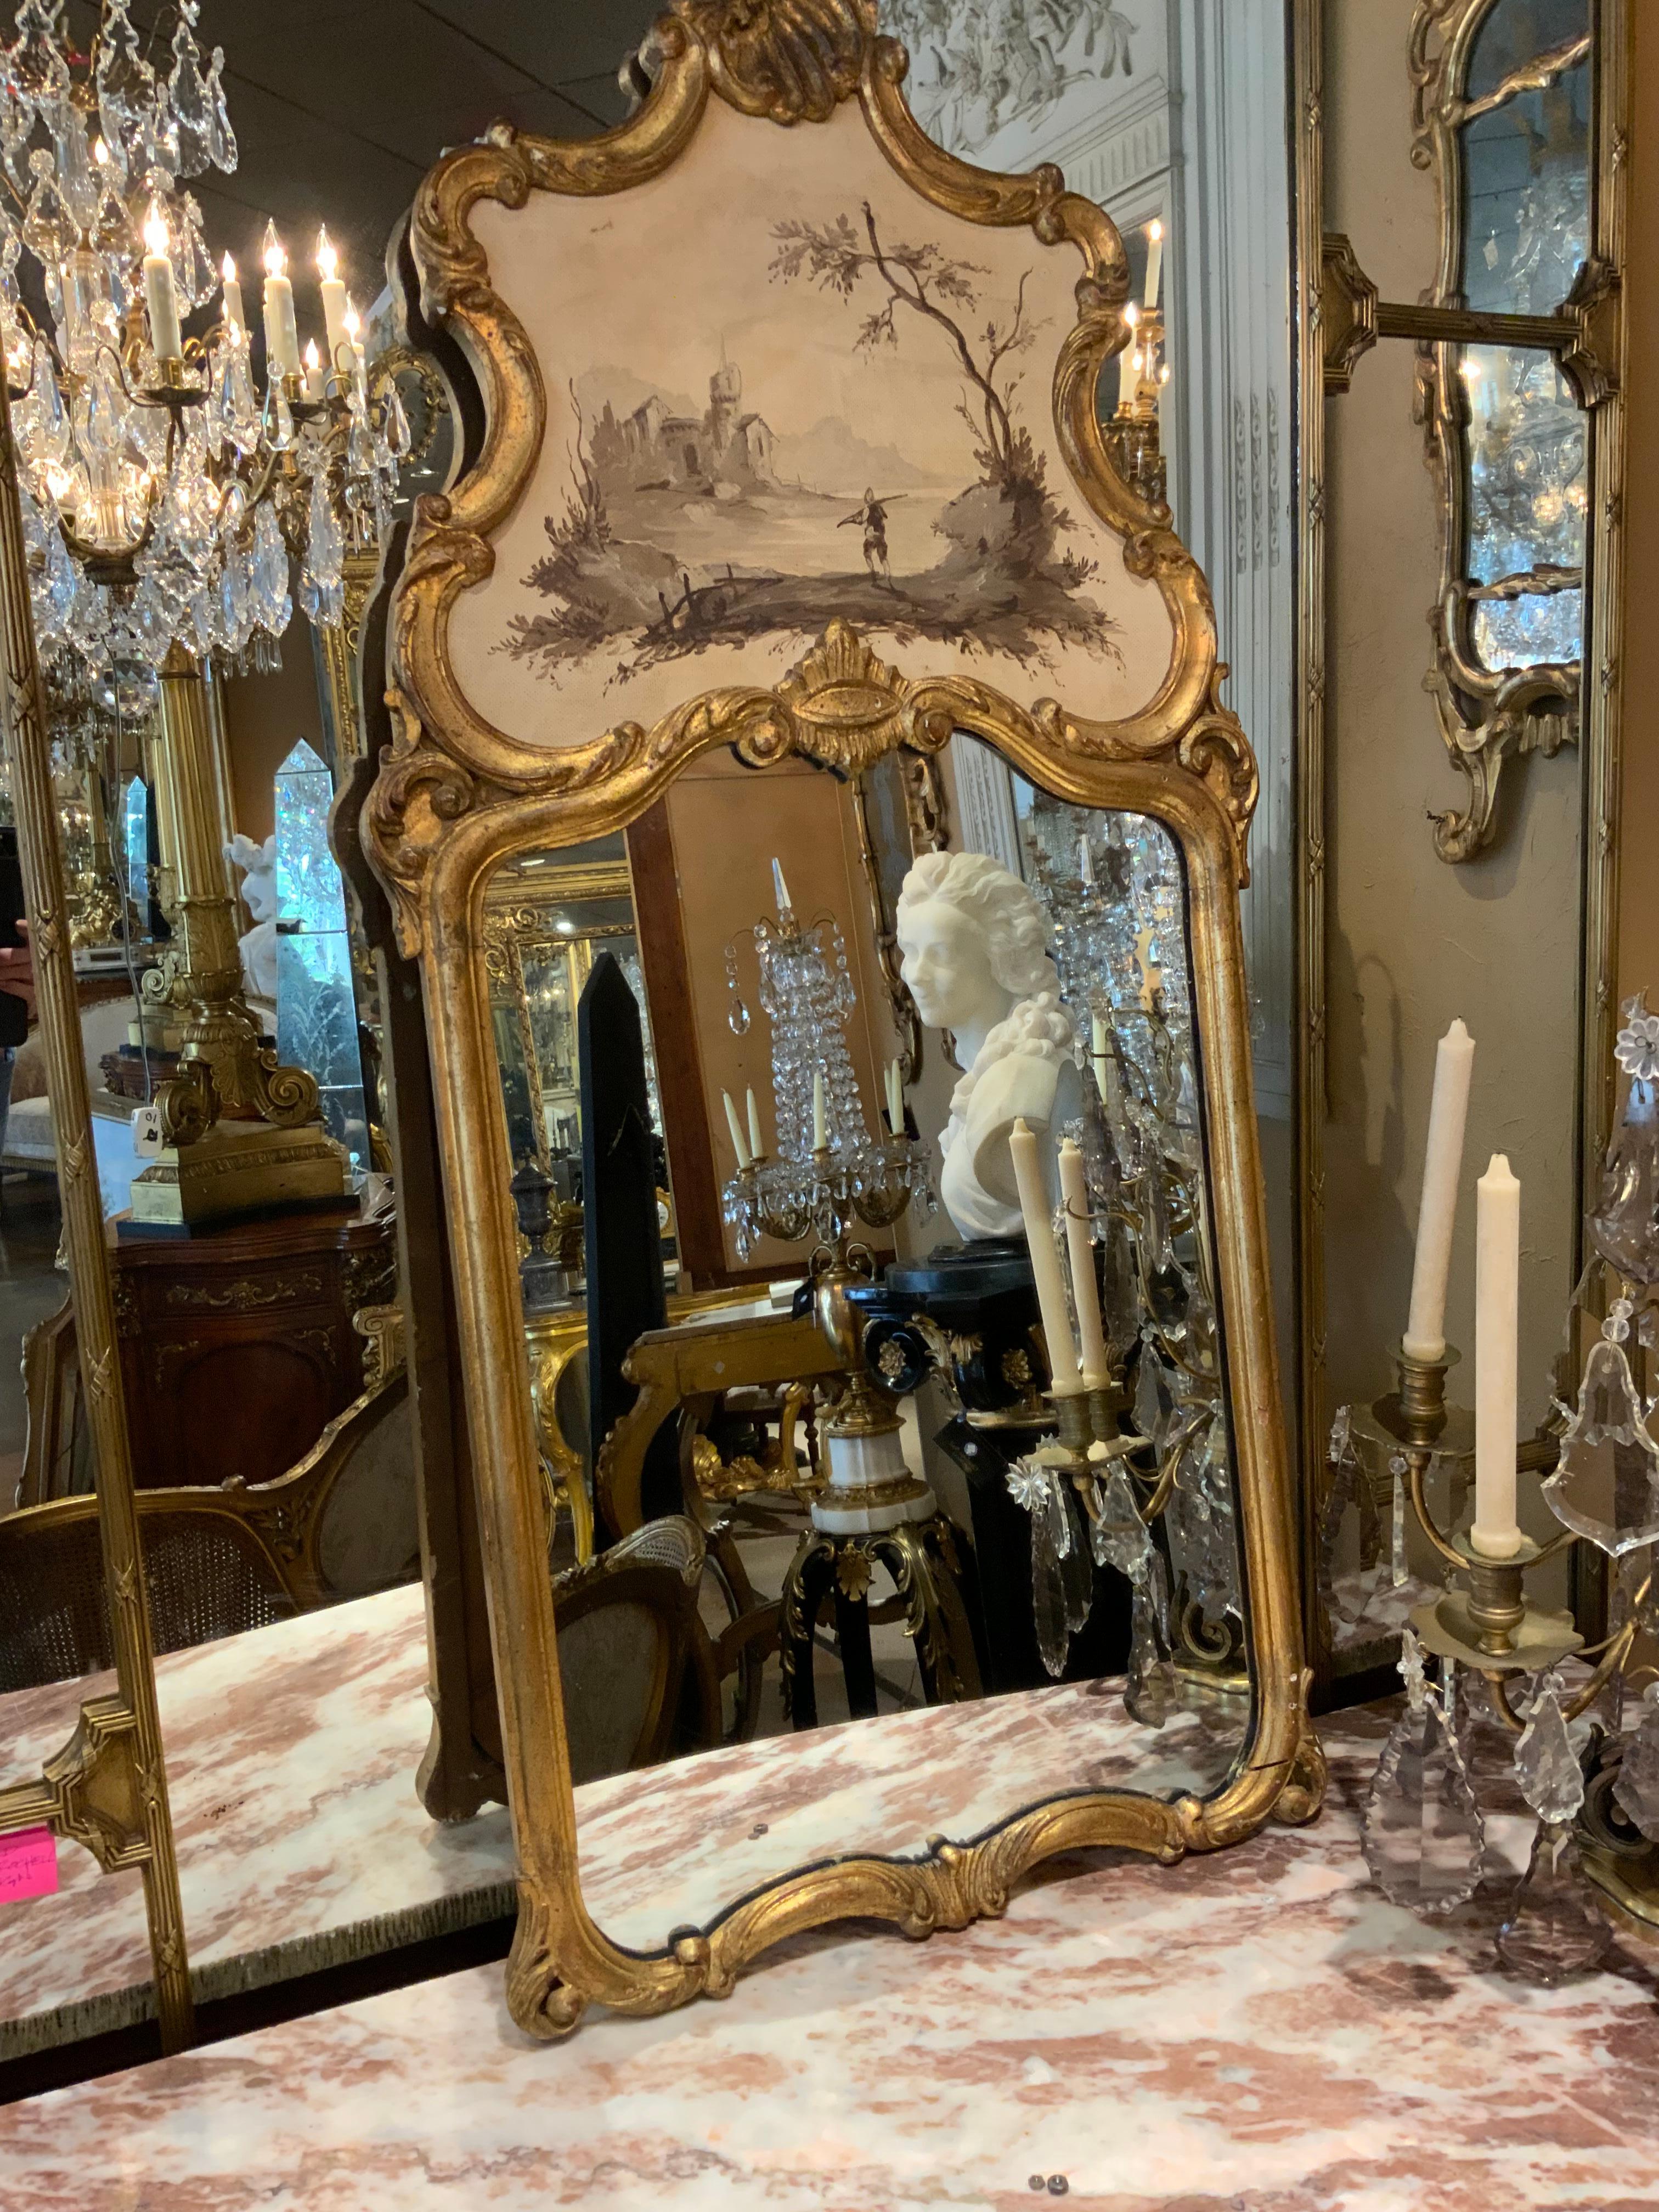 Diese außergewöhnlichen Spiegel sind im Stil des venezianischen Rokoko gehalten.
Sie haben Rokoko-Einfassungen mit Schnitzereien, wobei die obere
Tafeln mit handgemalten Figuren in Landschaften verziert
En grisaille. Der Hintergrund der